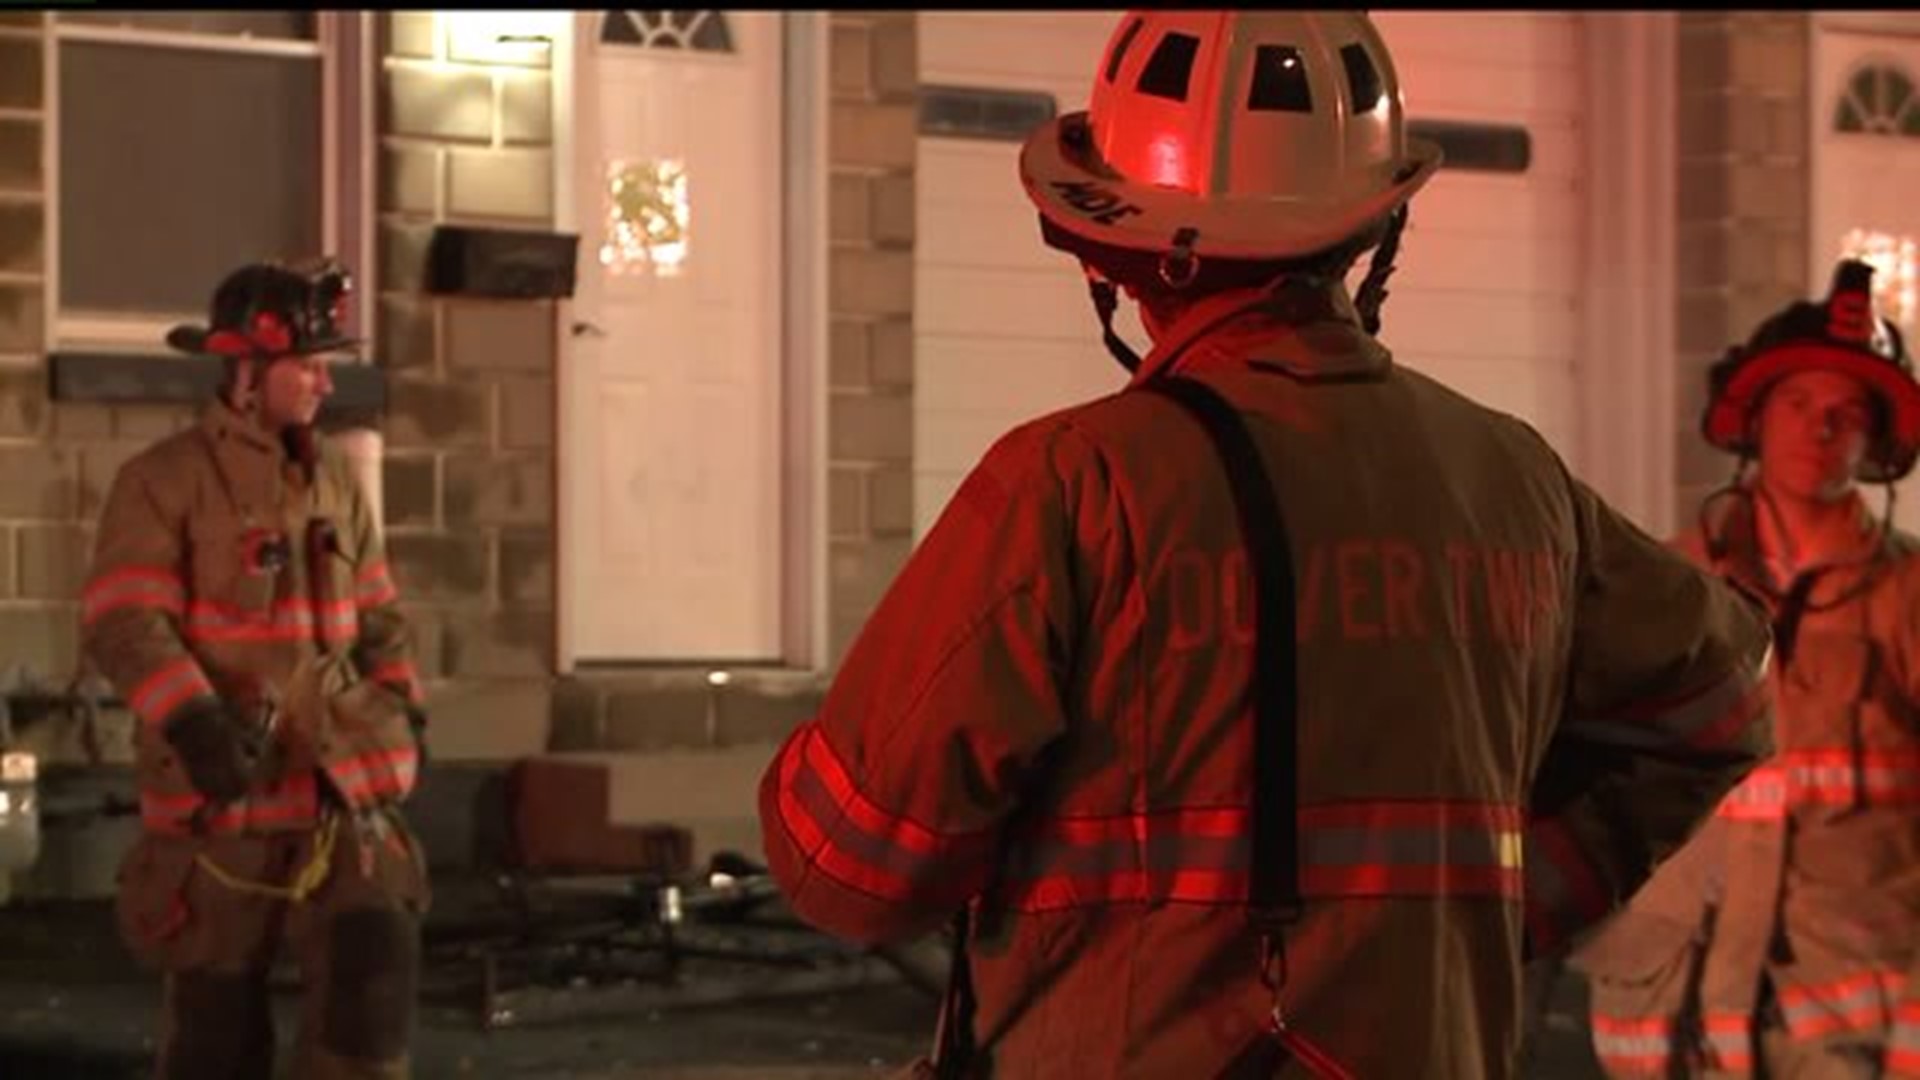 Crews battle fire at York home